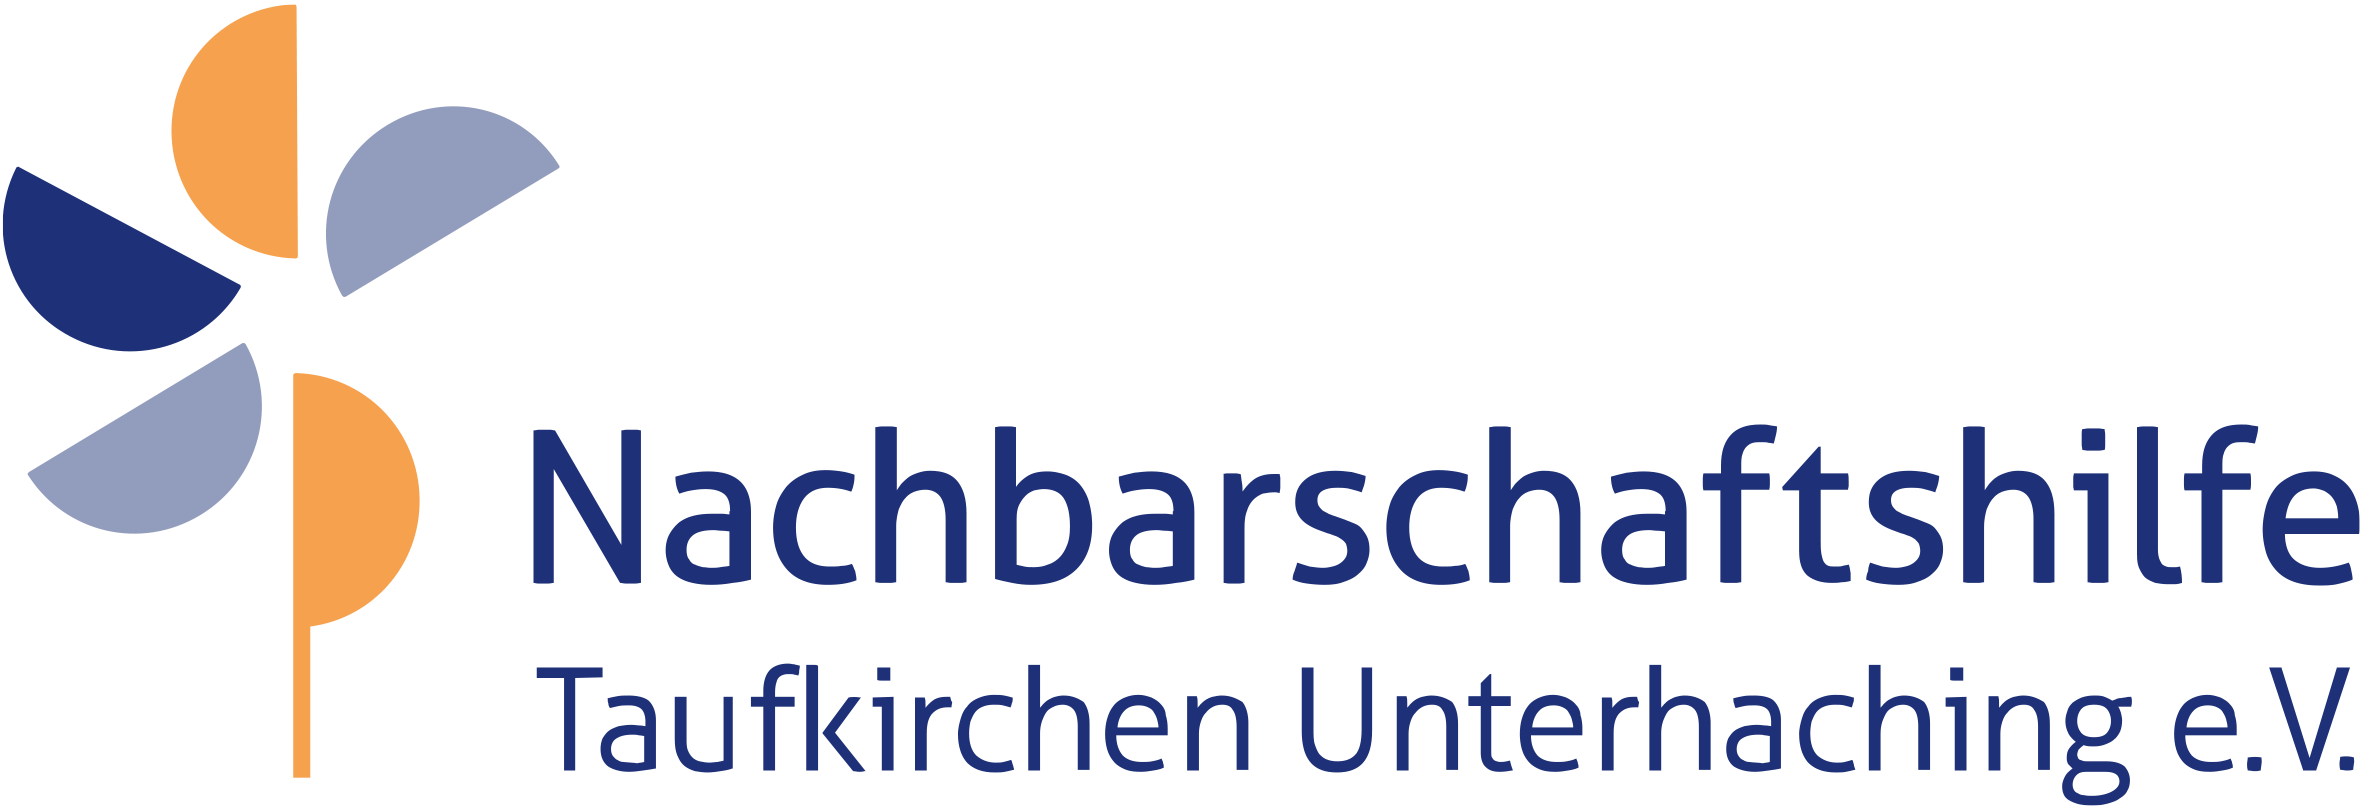 Nachbarschaftshilfe Taufkirchen Unterhaching - Sturzprävention